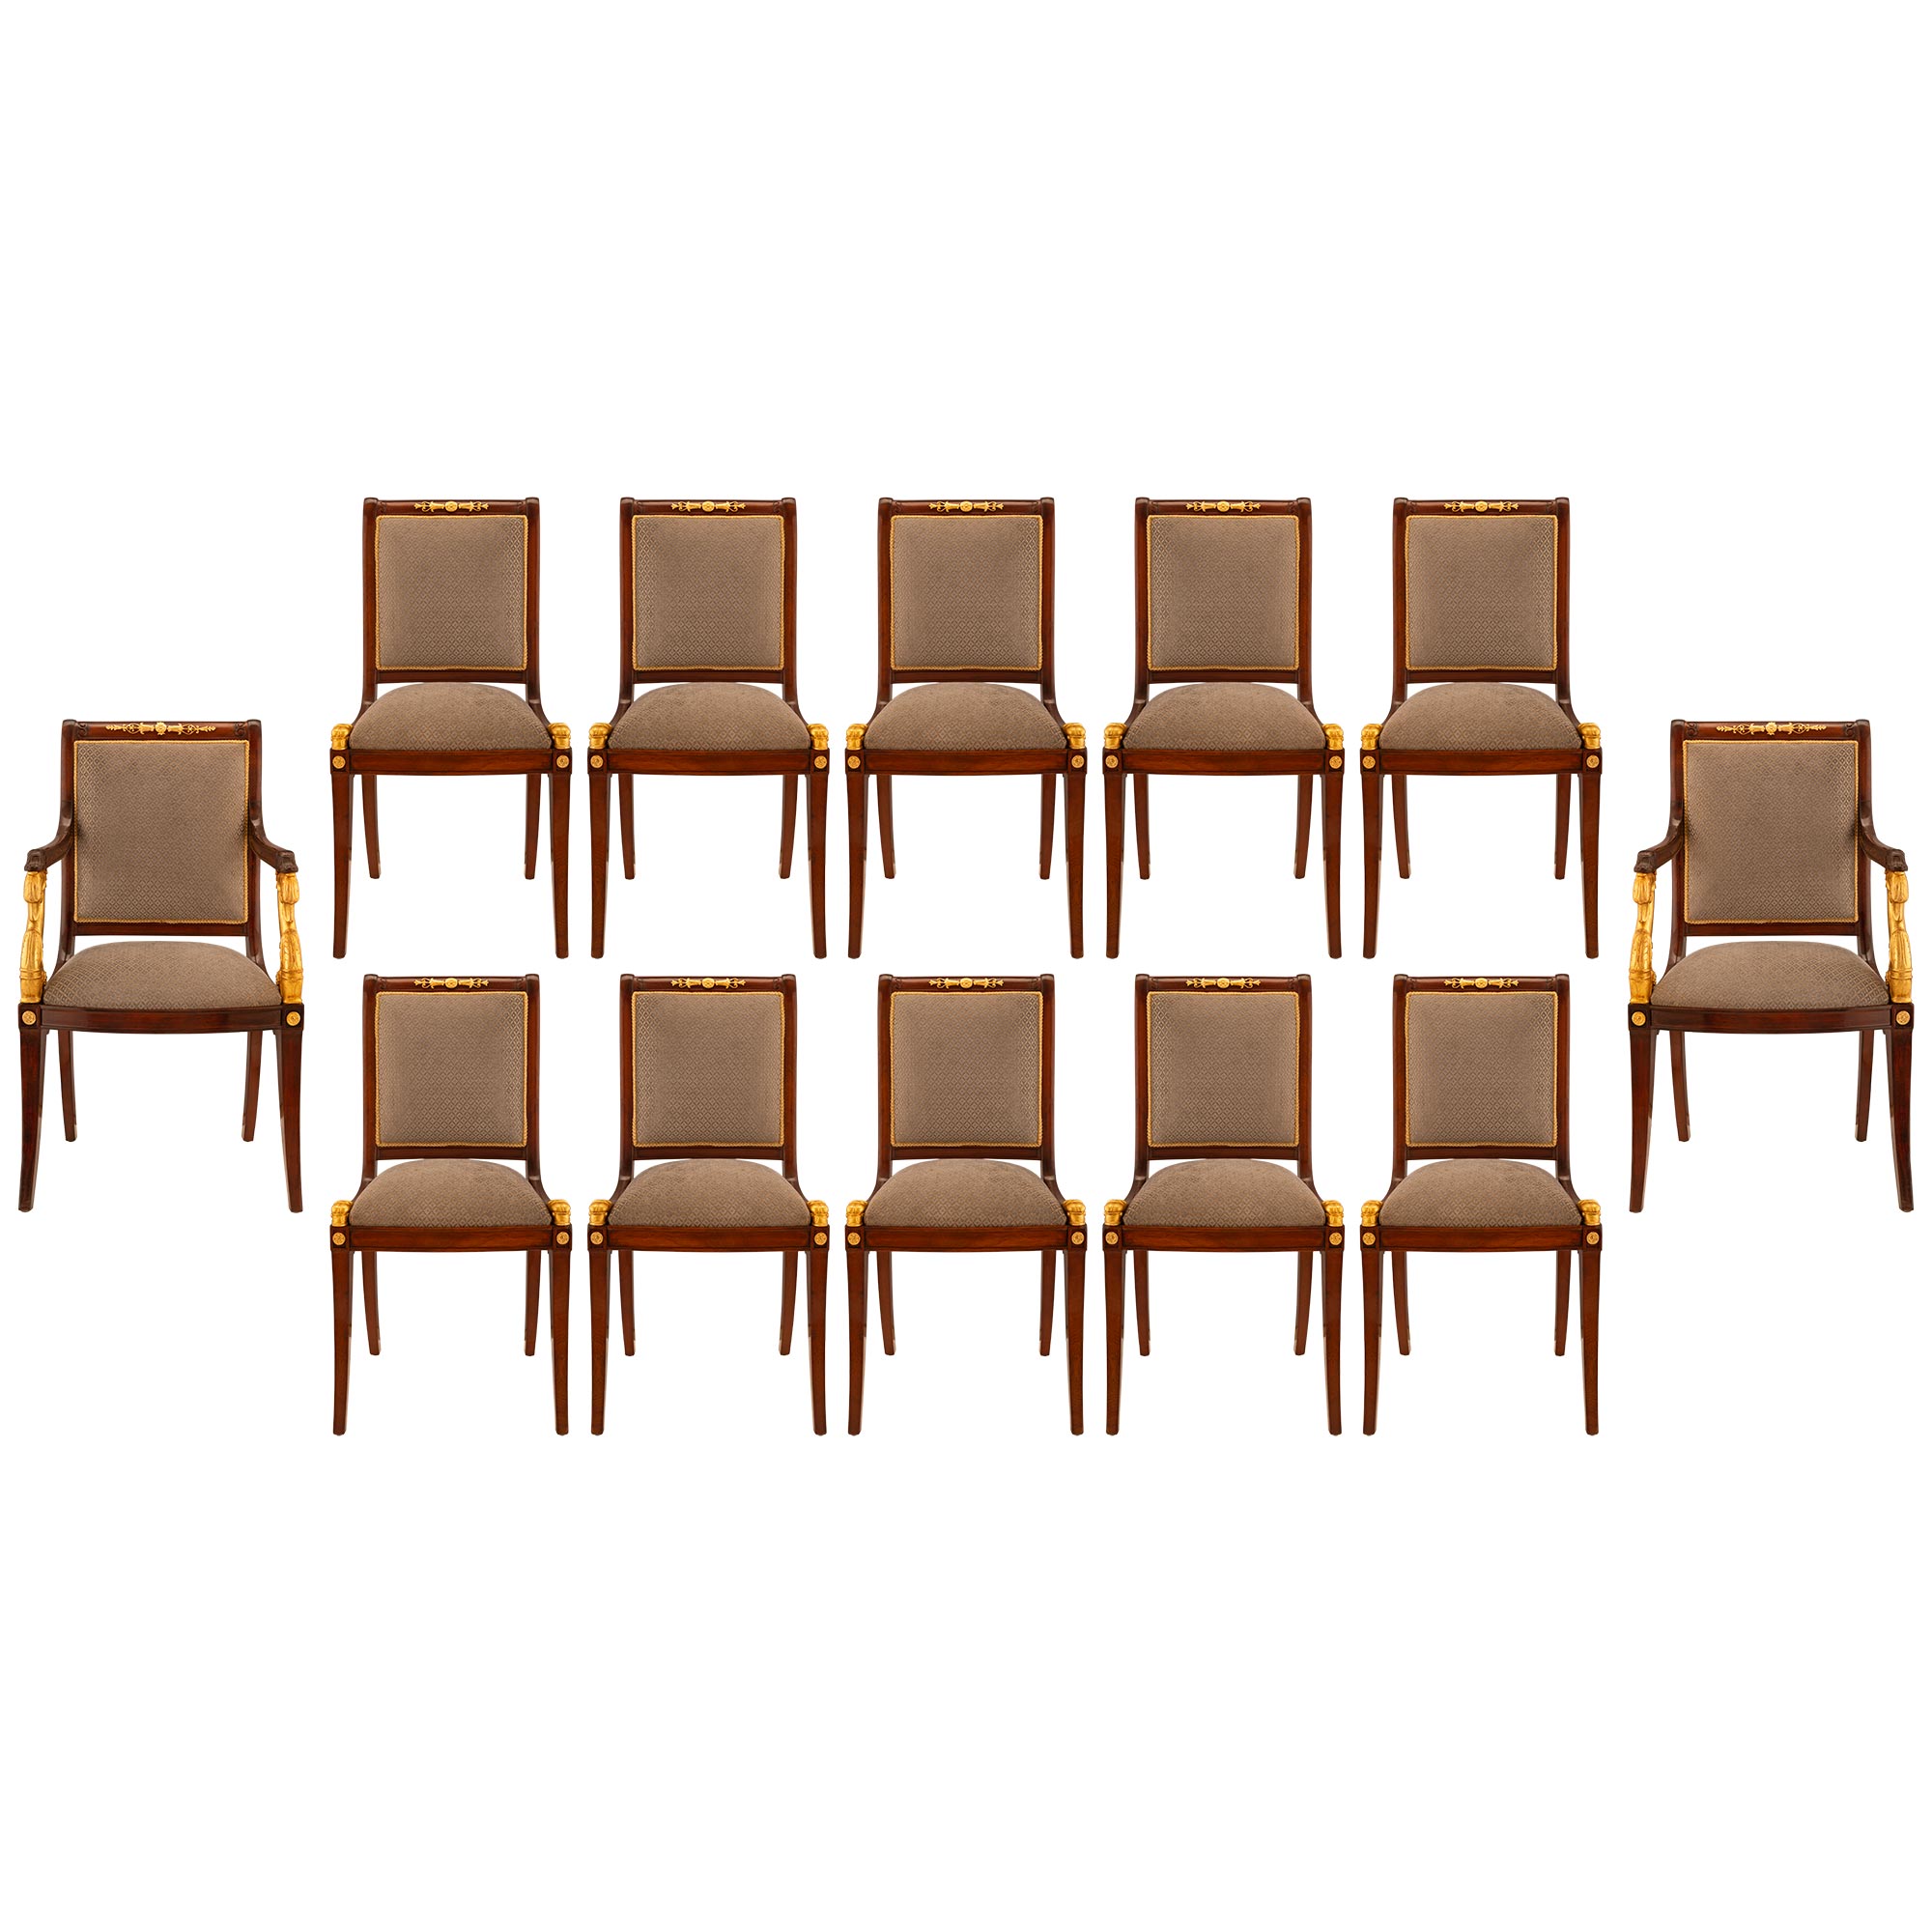 Ensemble complet de douze chaises de salle à manger néoclassiques françaises du 19e siècle